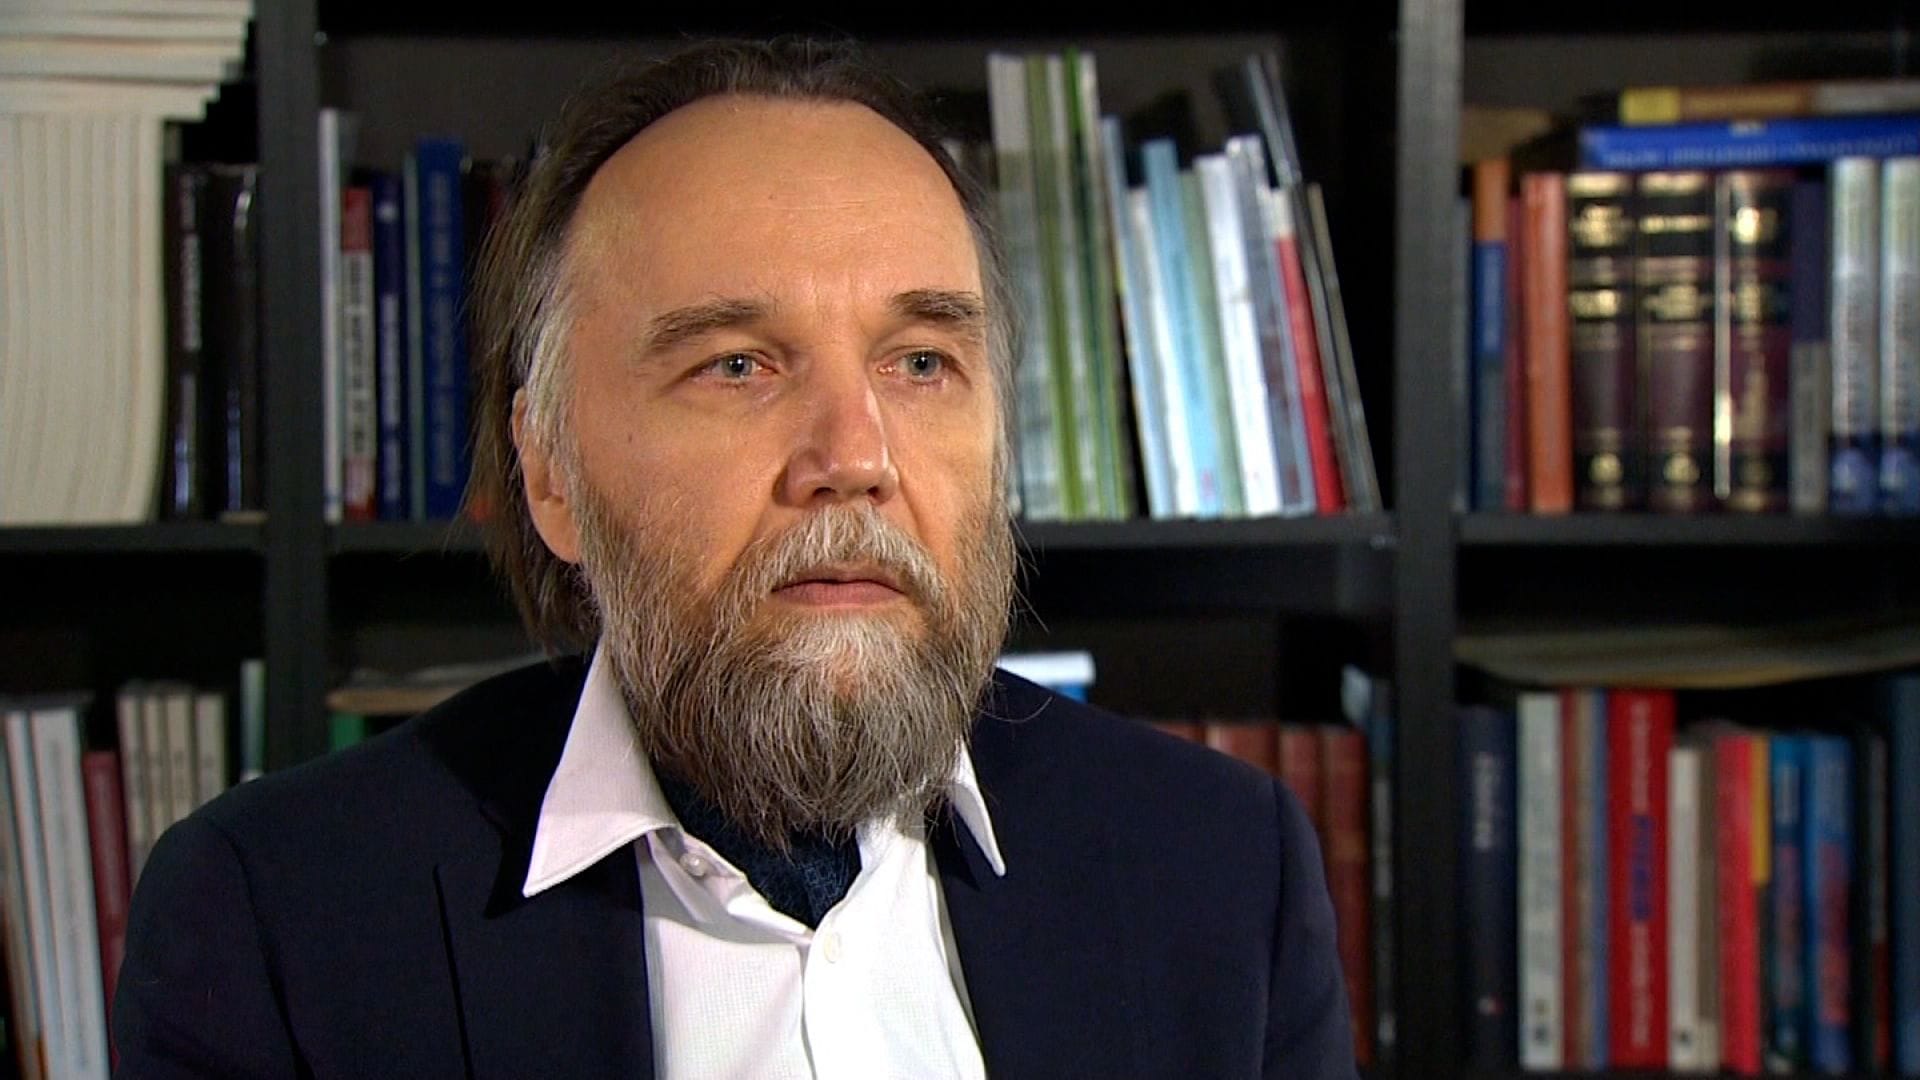 "Somente x.com pode fornecer a imagem correta de como as coisas realmente são na escala global" Alexander Dugin